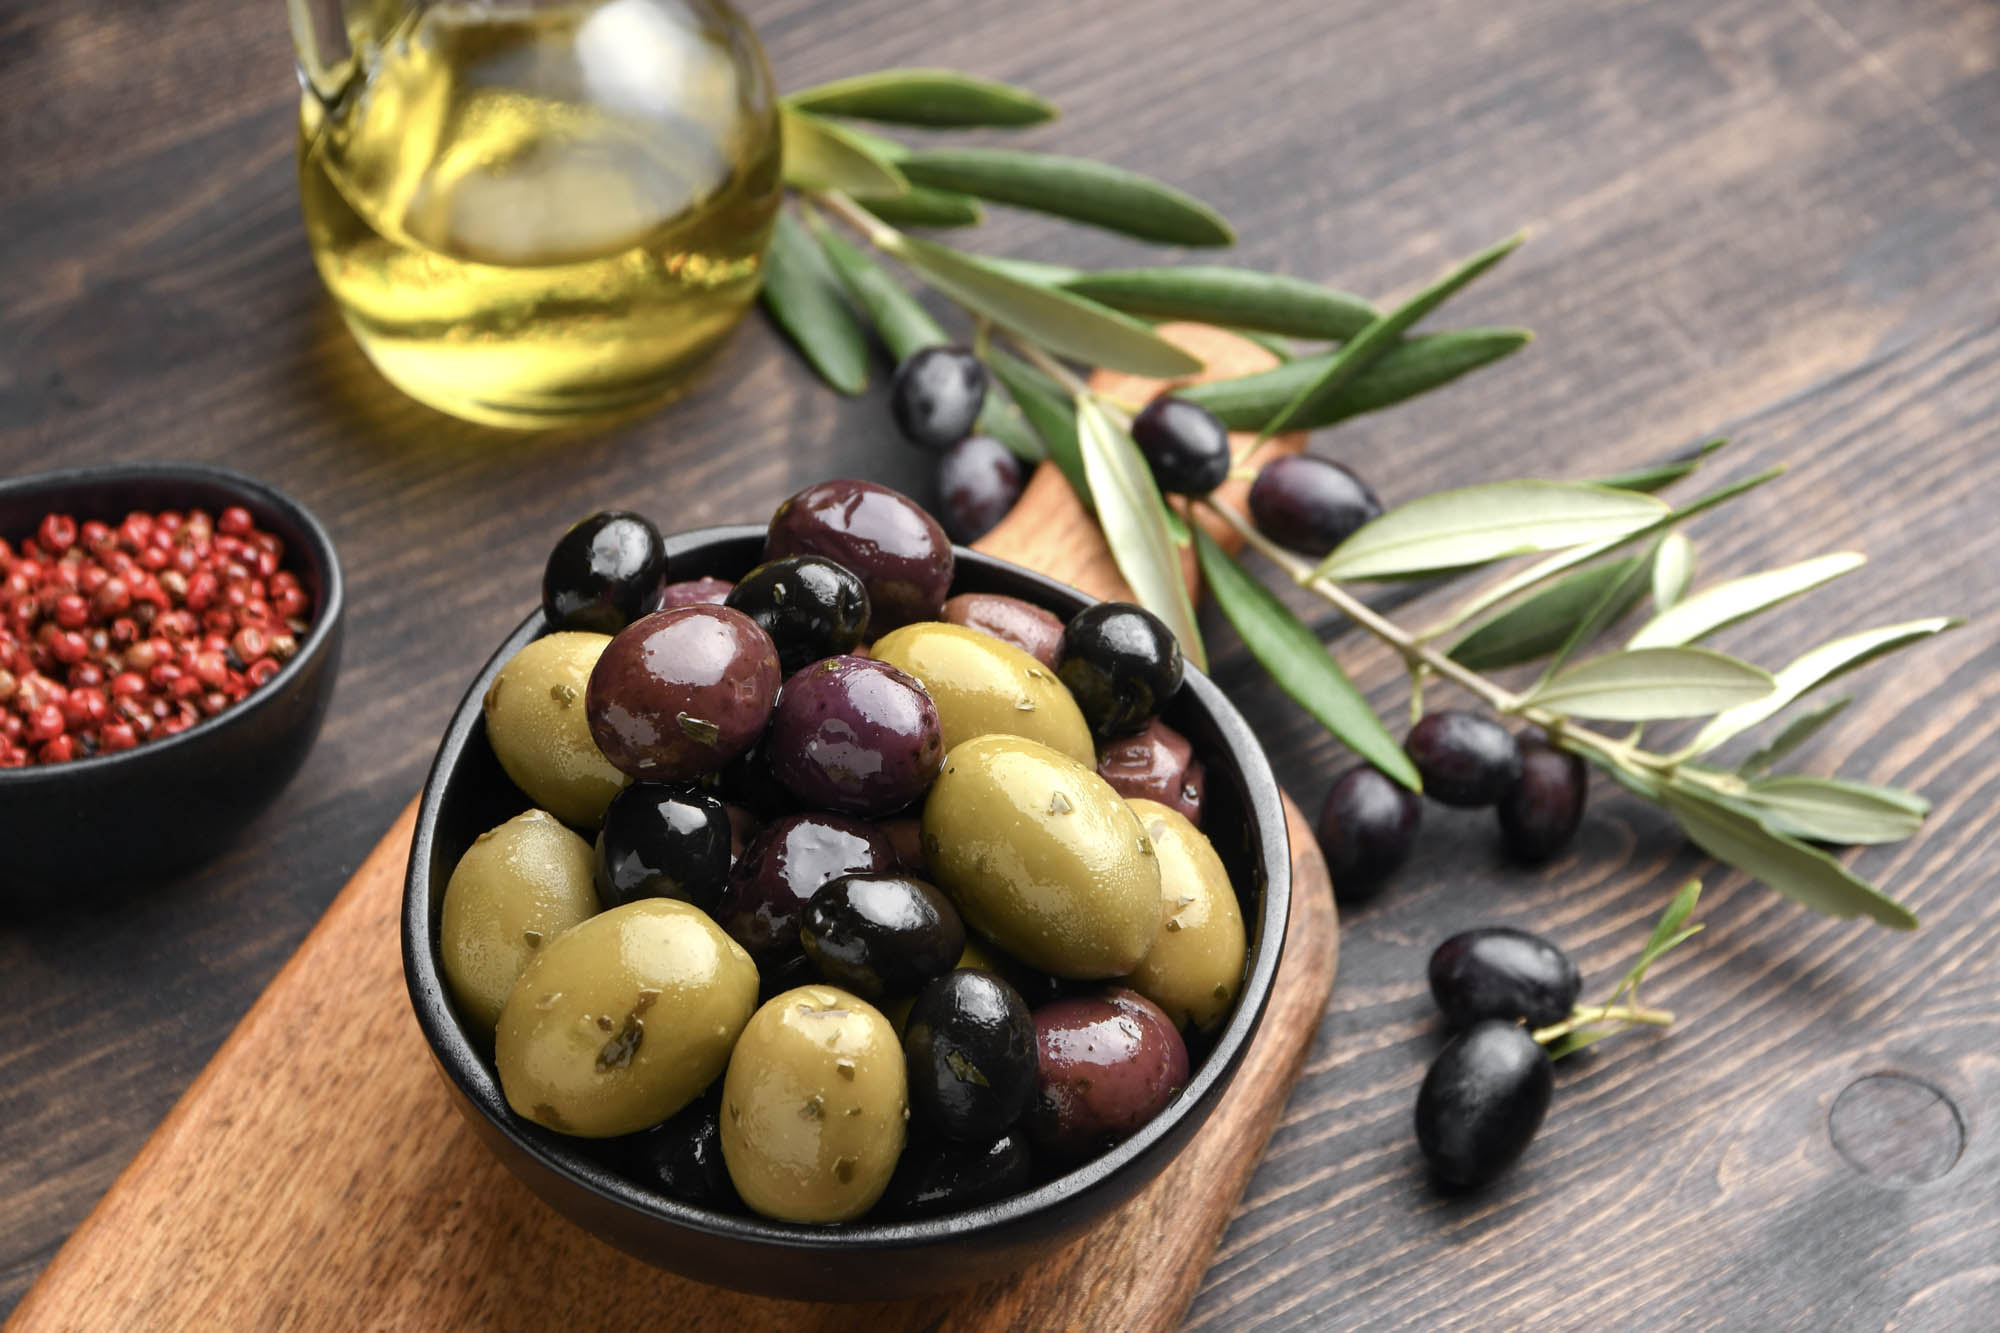 miks oliwek czarnych, brązowych i zielonych podanych na talerzyku, pyszne przystawki